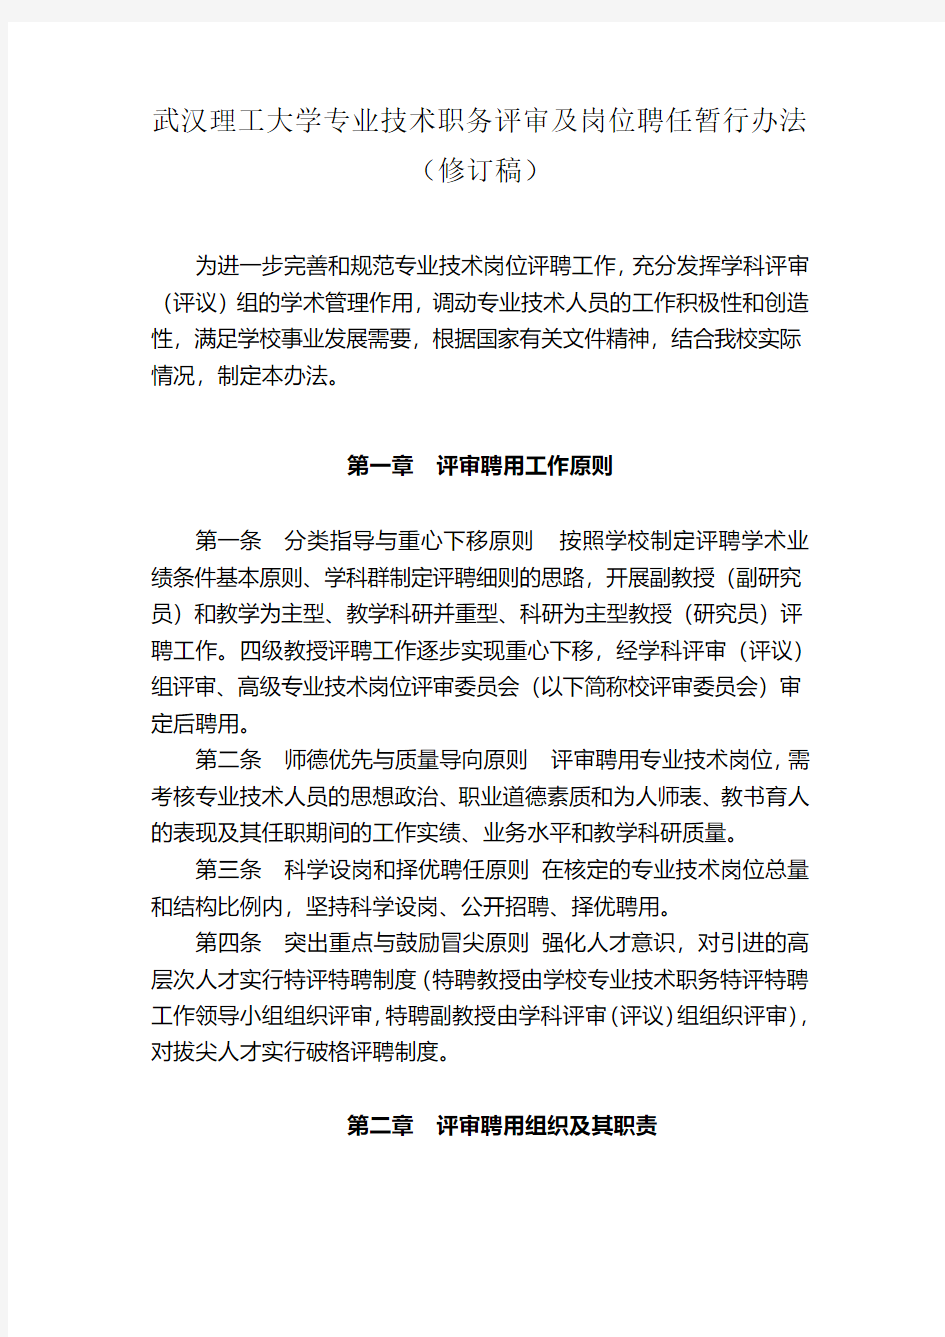 武汉理工大学专业技术职务评审及岗位聘任暂行办法修订稿